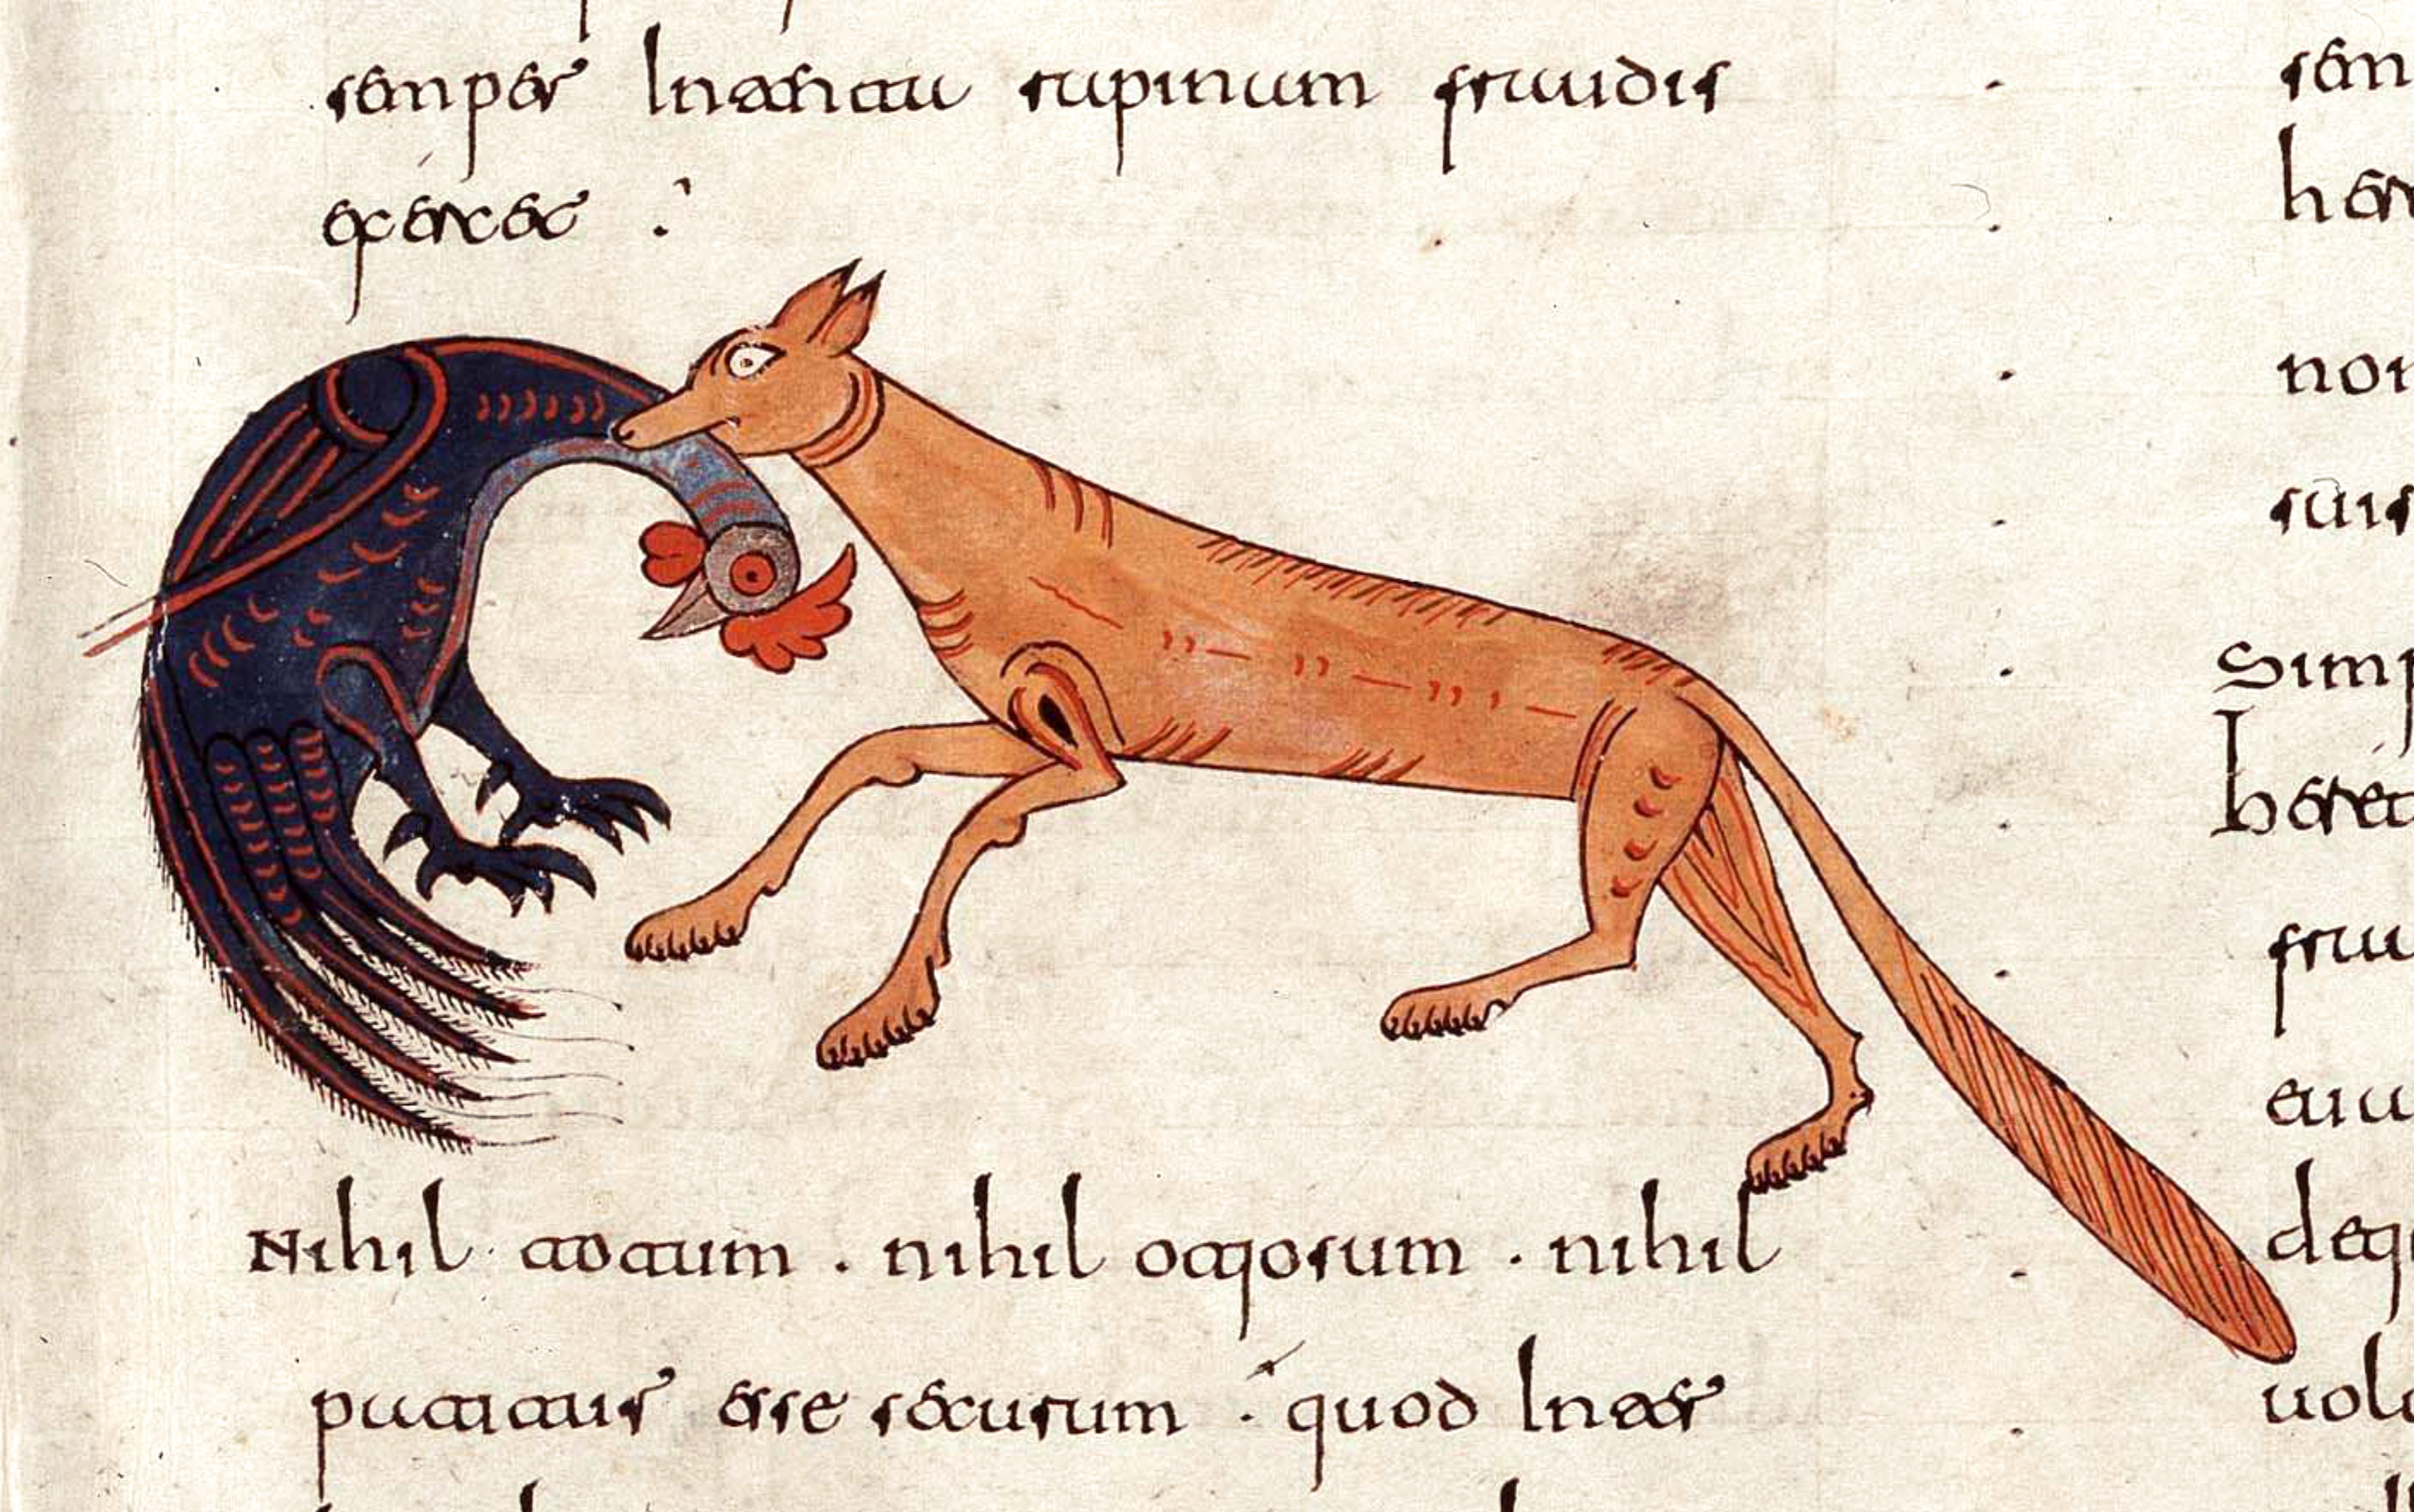 Beatus de Facundus, p. 394 – Scène de chasse, renard attrapant un coq.